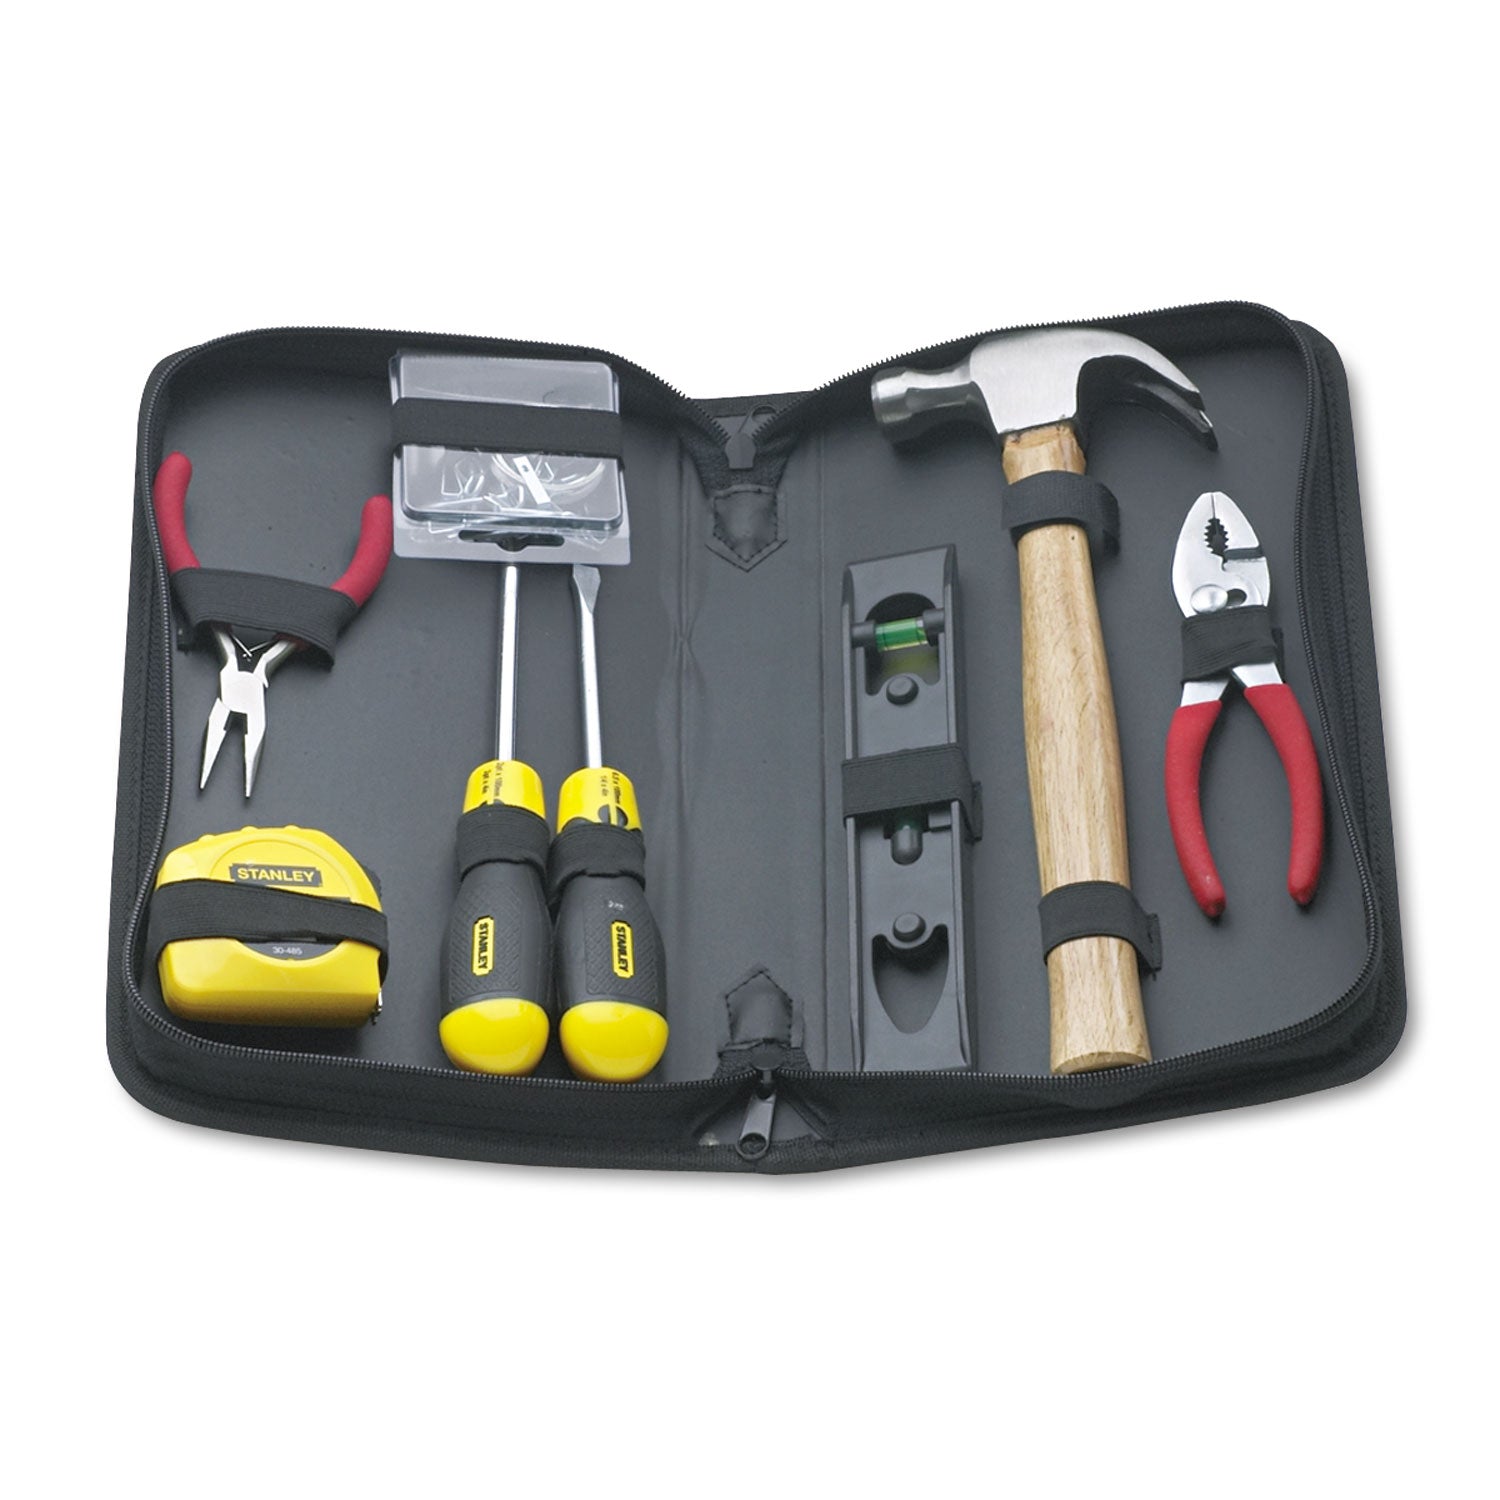 General Repair 8 Piece Tool Kit in Water-Resistant Black Zippered Case - 